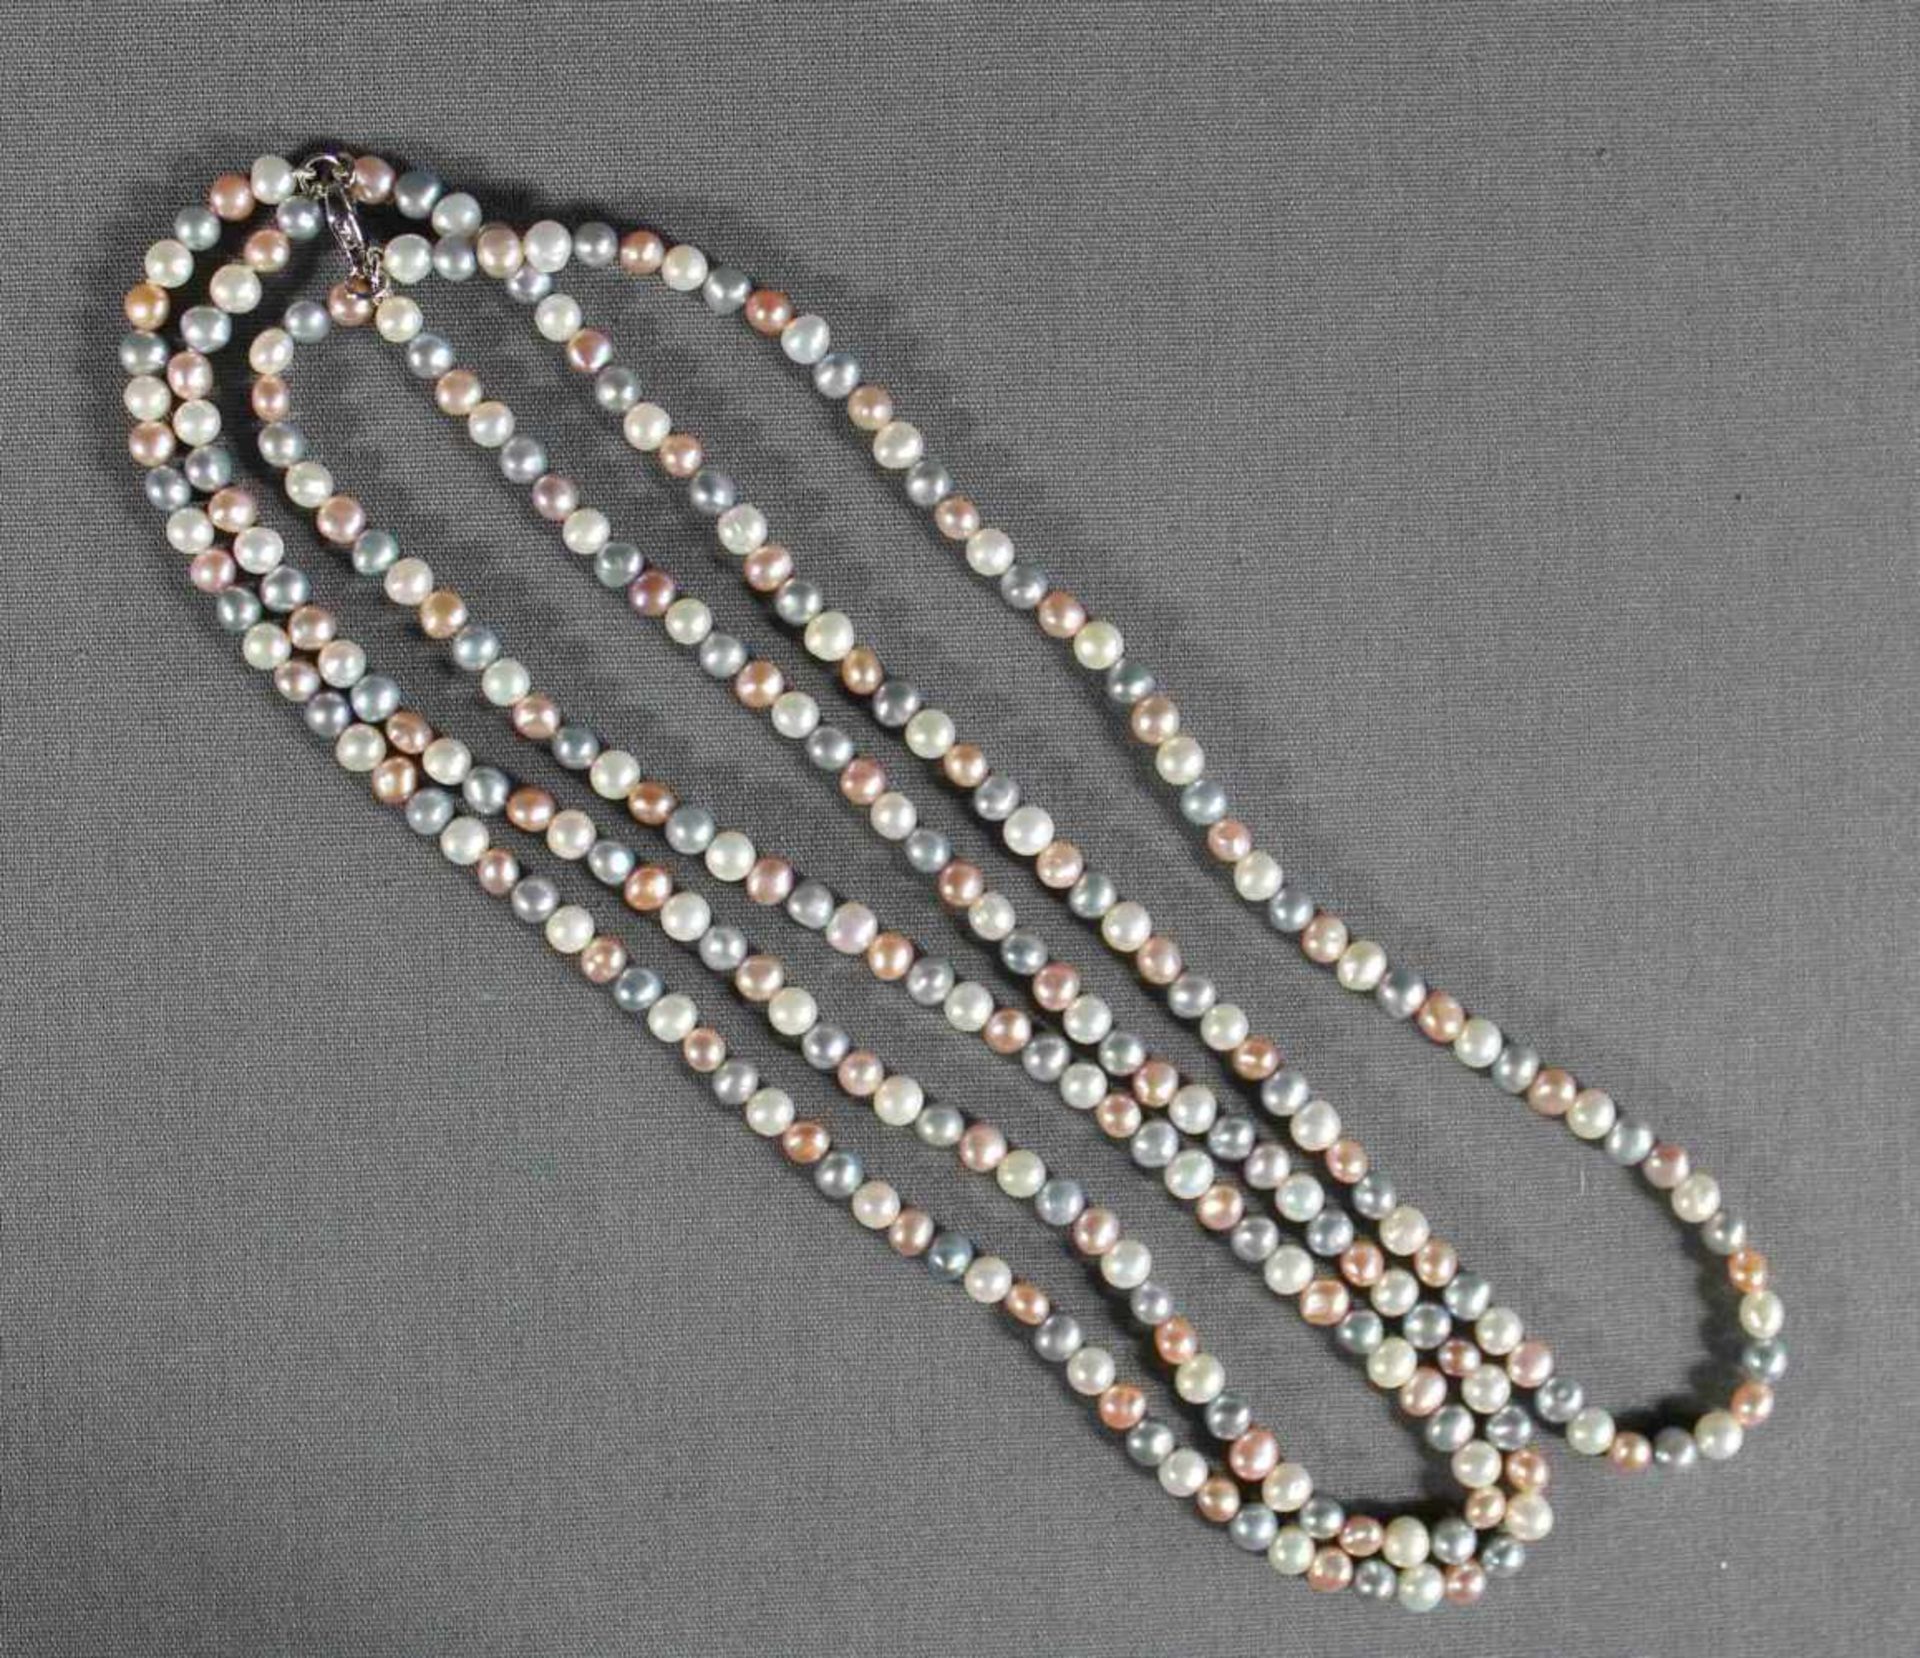 1 Perlencollier aus 3-farbigen kleinen Perlen, 3 Stränge, Karabinerverschluß Silber (925/000), L ca.